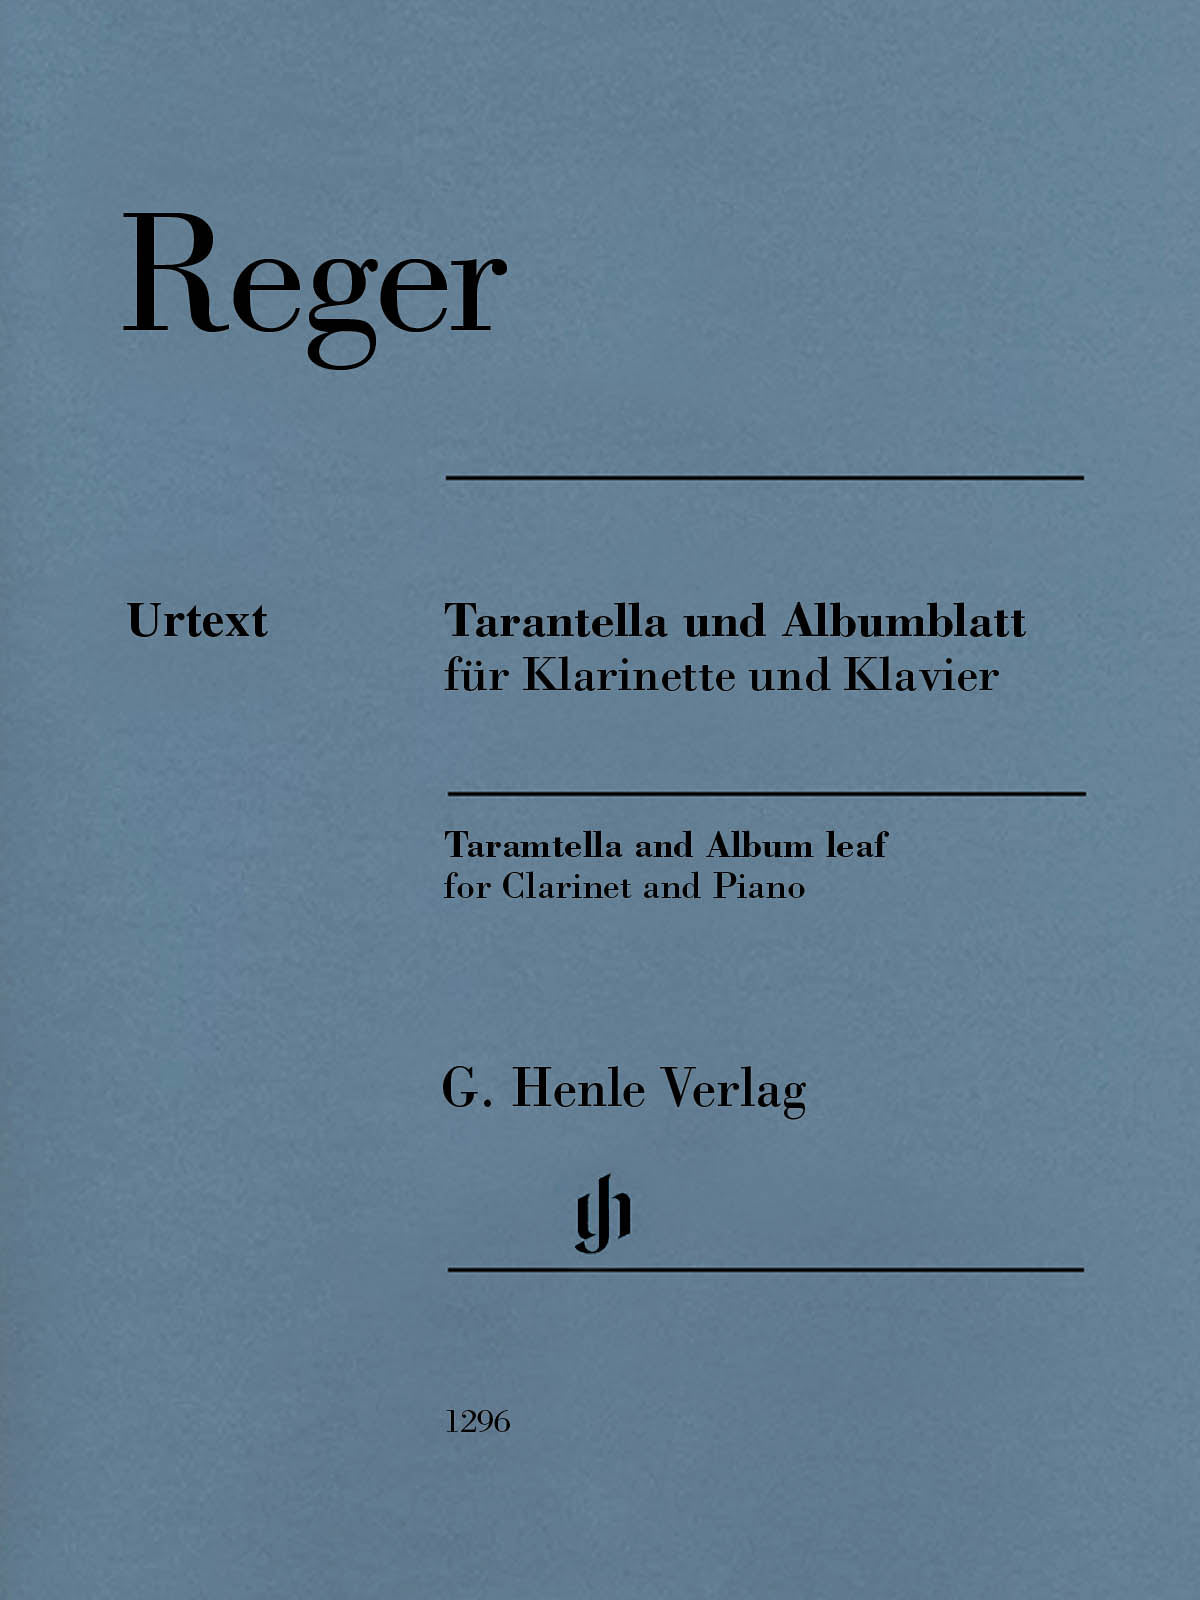 Reger: Tarantella and Album Leaf